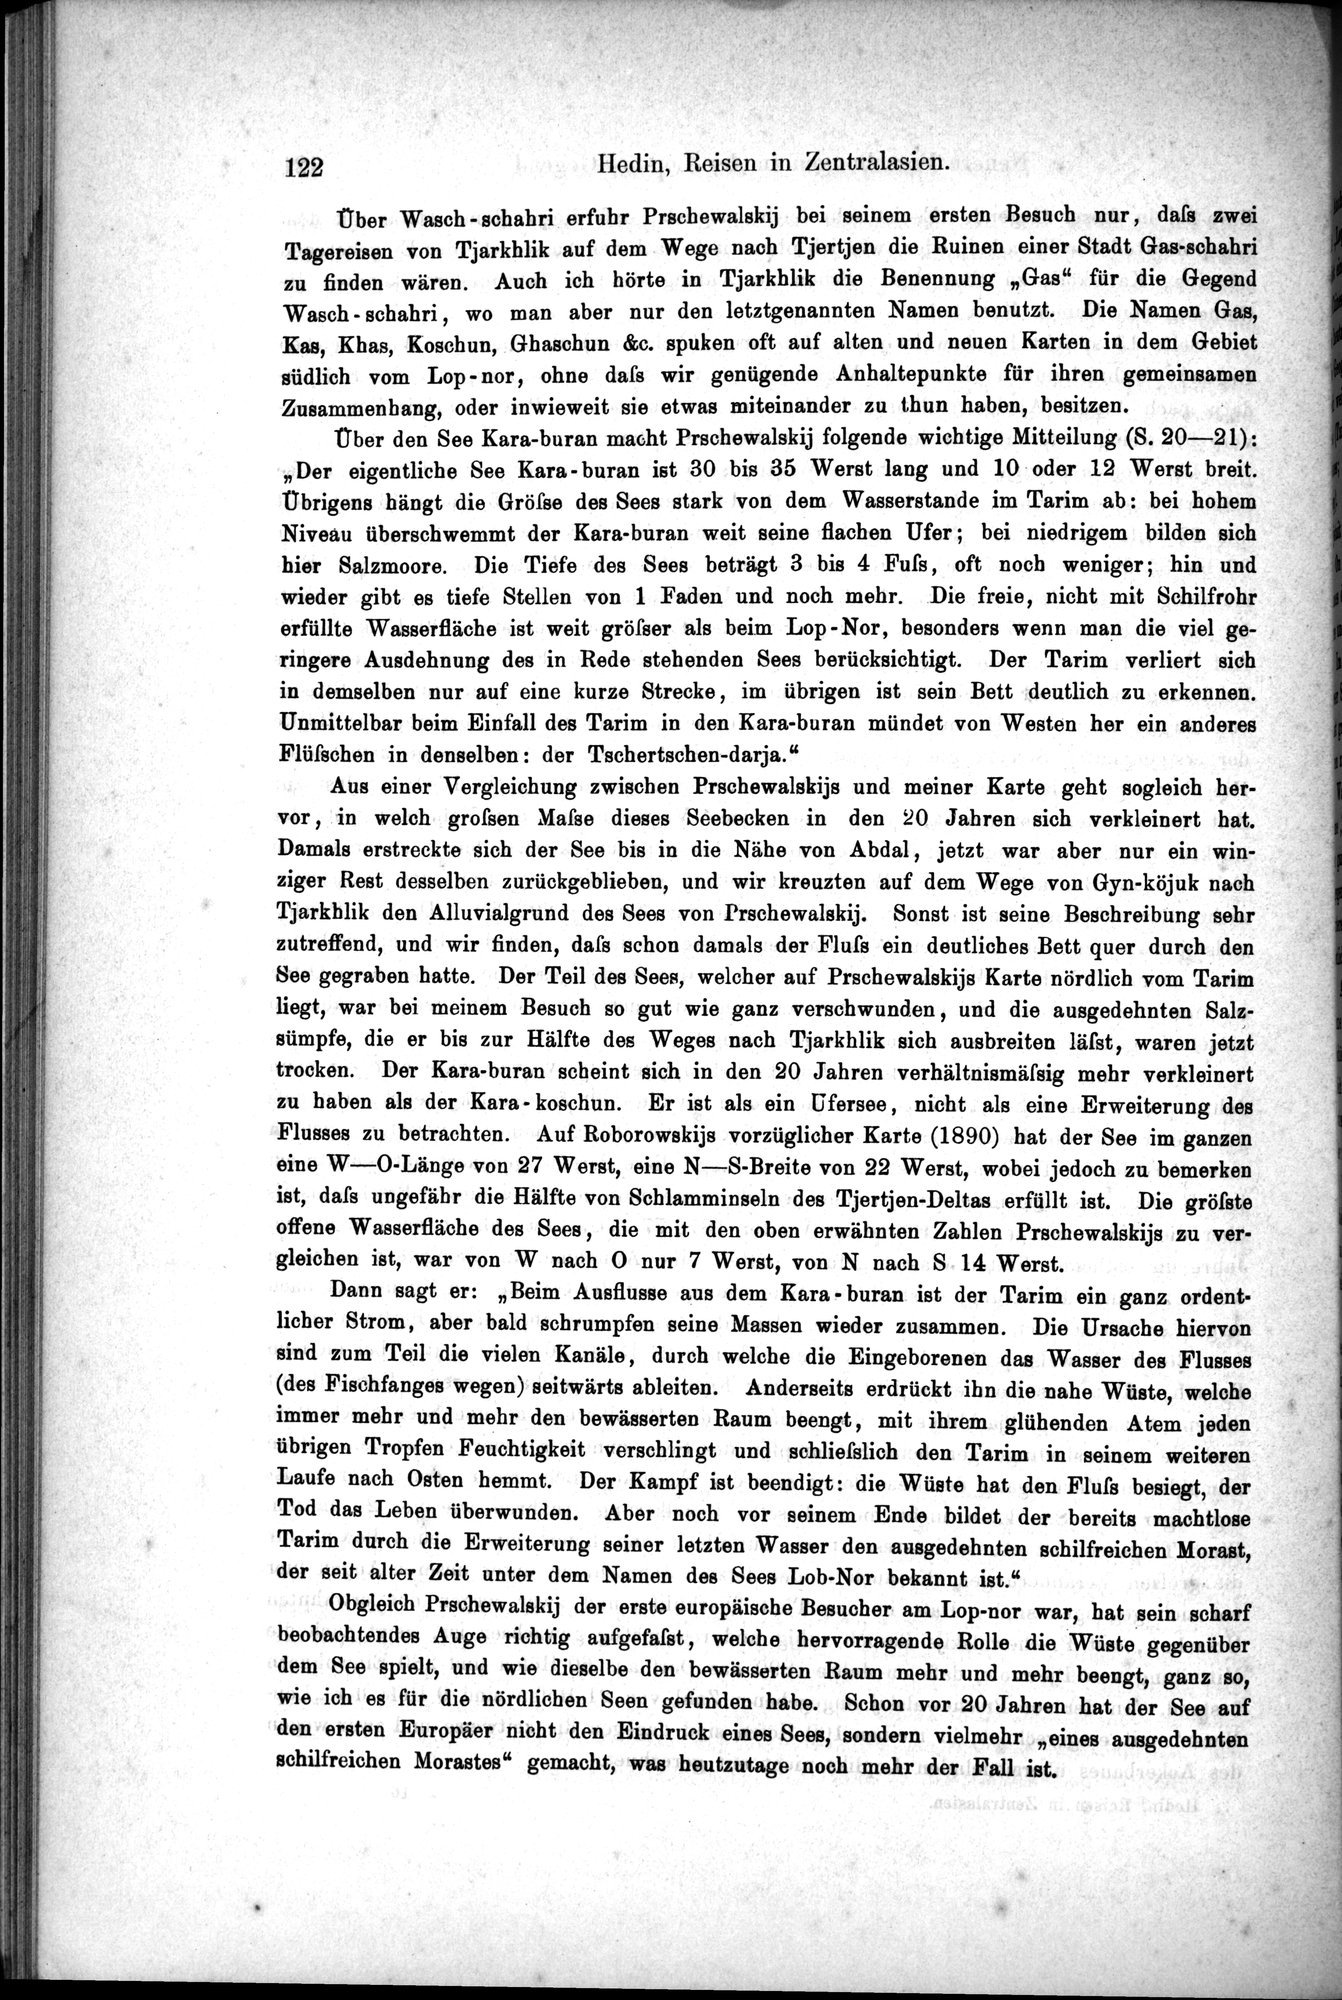 Die Geographische-Wissenschaftlichen Ergebnisse meiner Reisen in Zentralasien, 1894-1897 : vol.1 / Page 134 (Grayscale High Resolution Image)